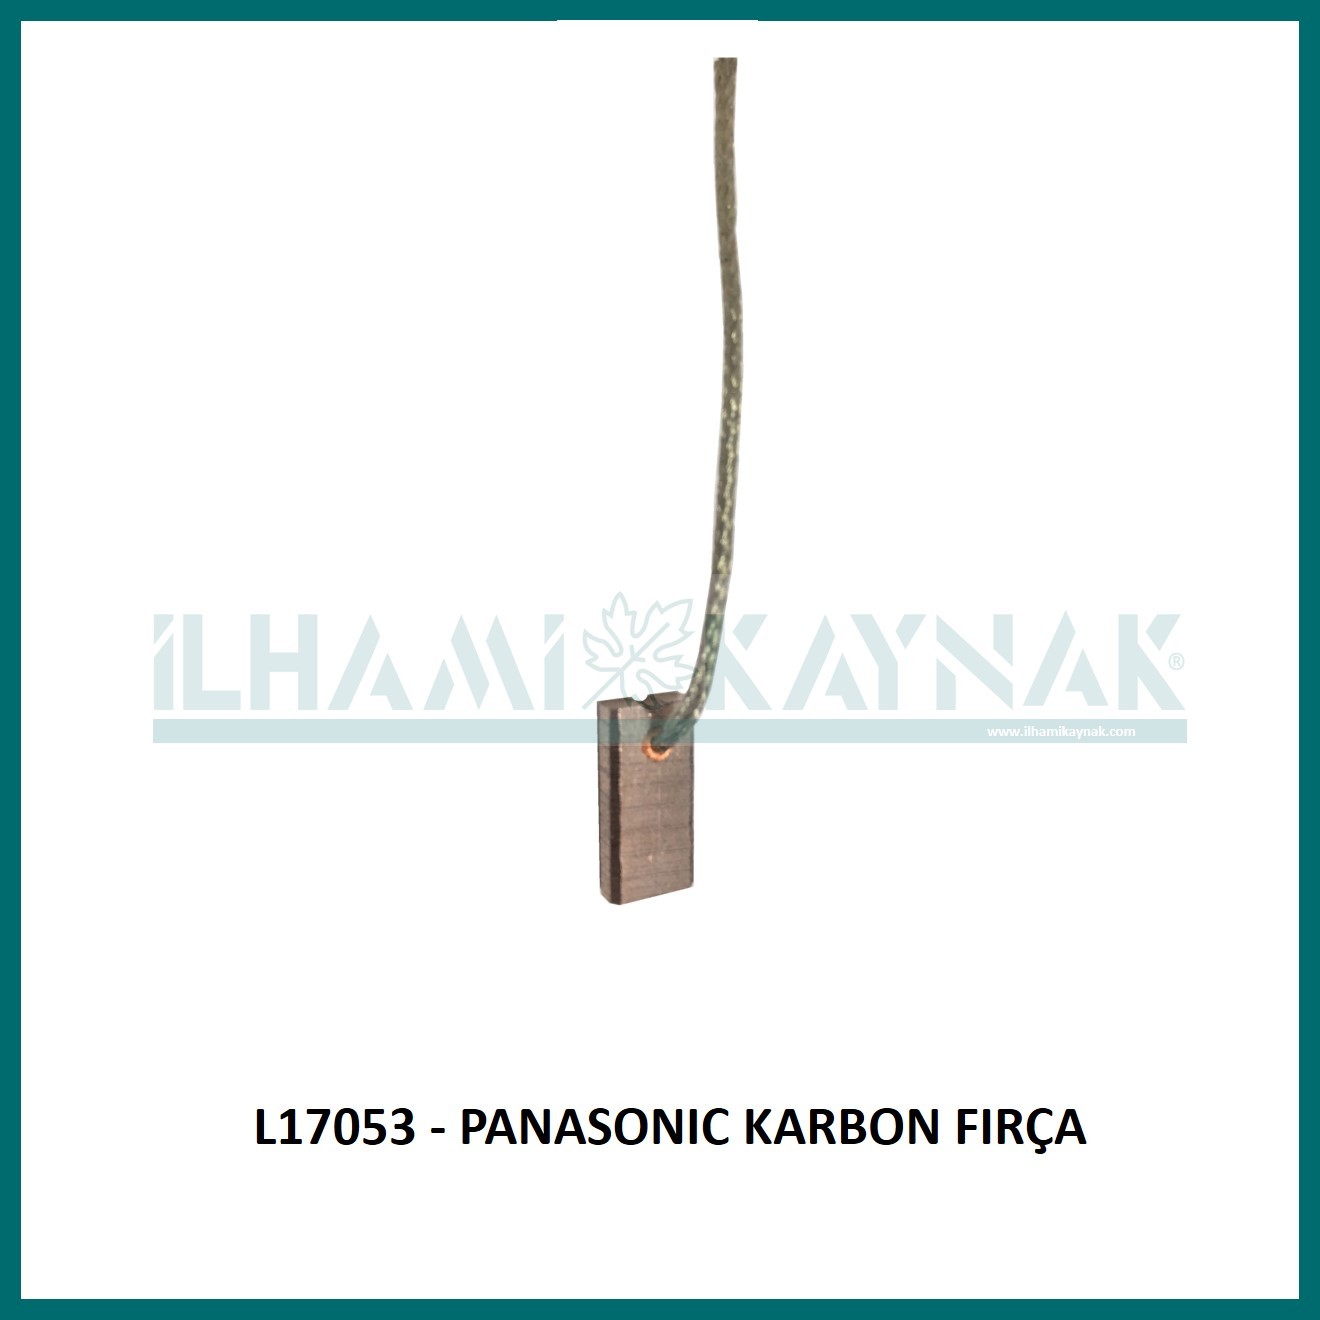 L17053 - PANASONIC KARBON FIRÇA - 3*7*13 mm - Minimum Satın Alım: 10 Adet